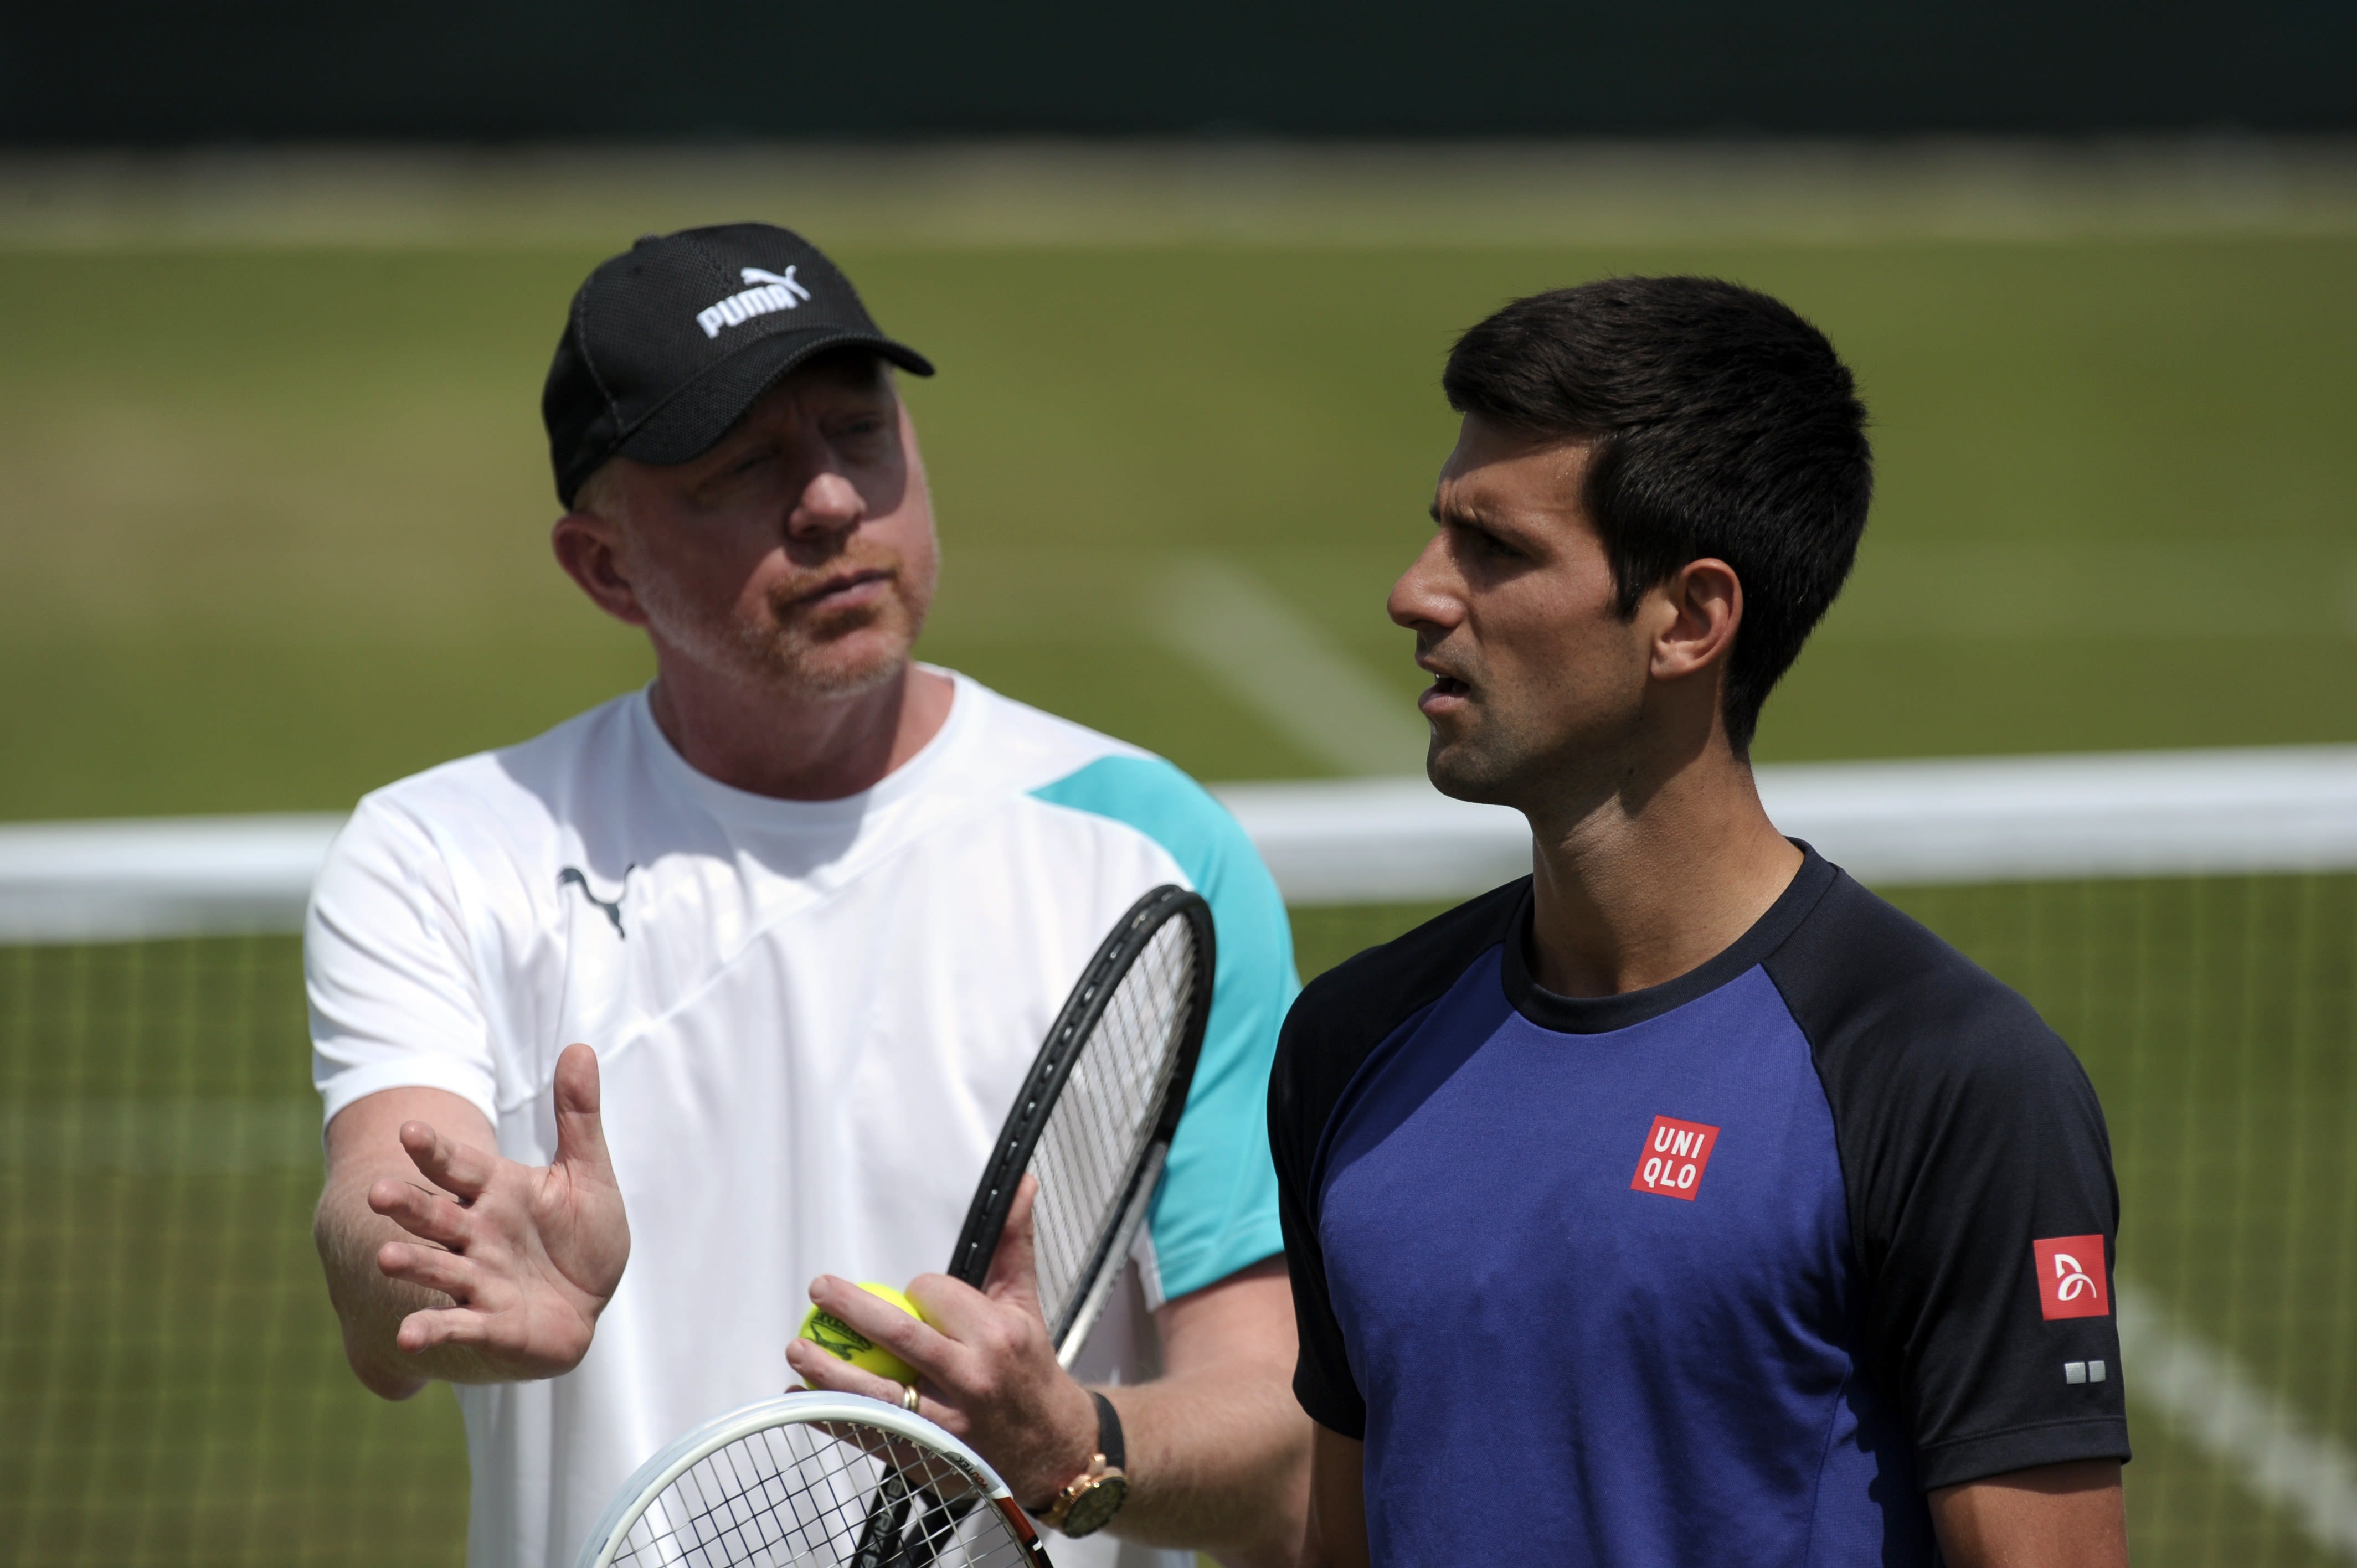 Novak Djokovic splits with coach Boris Becker | CNN